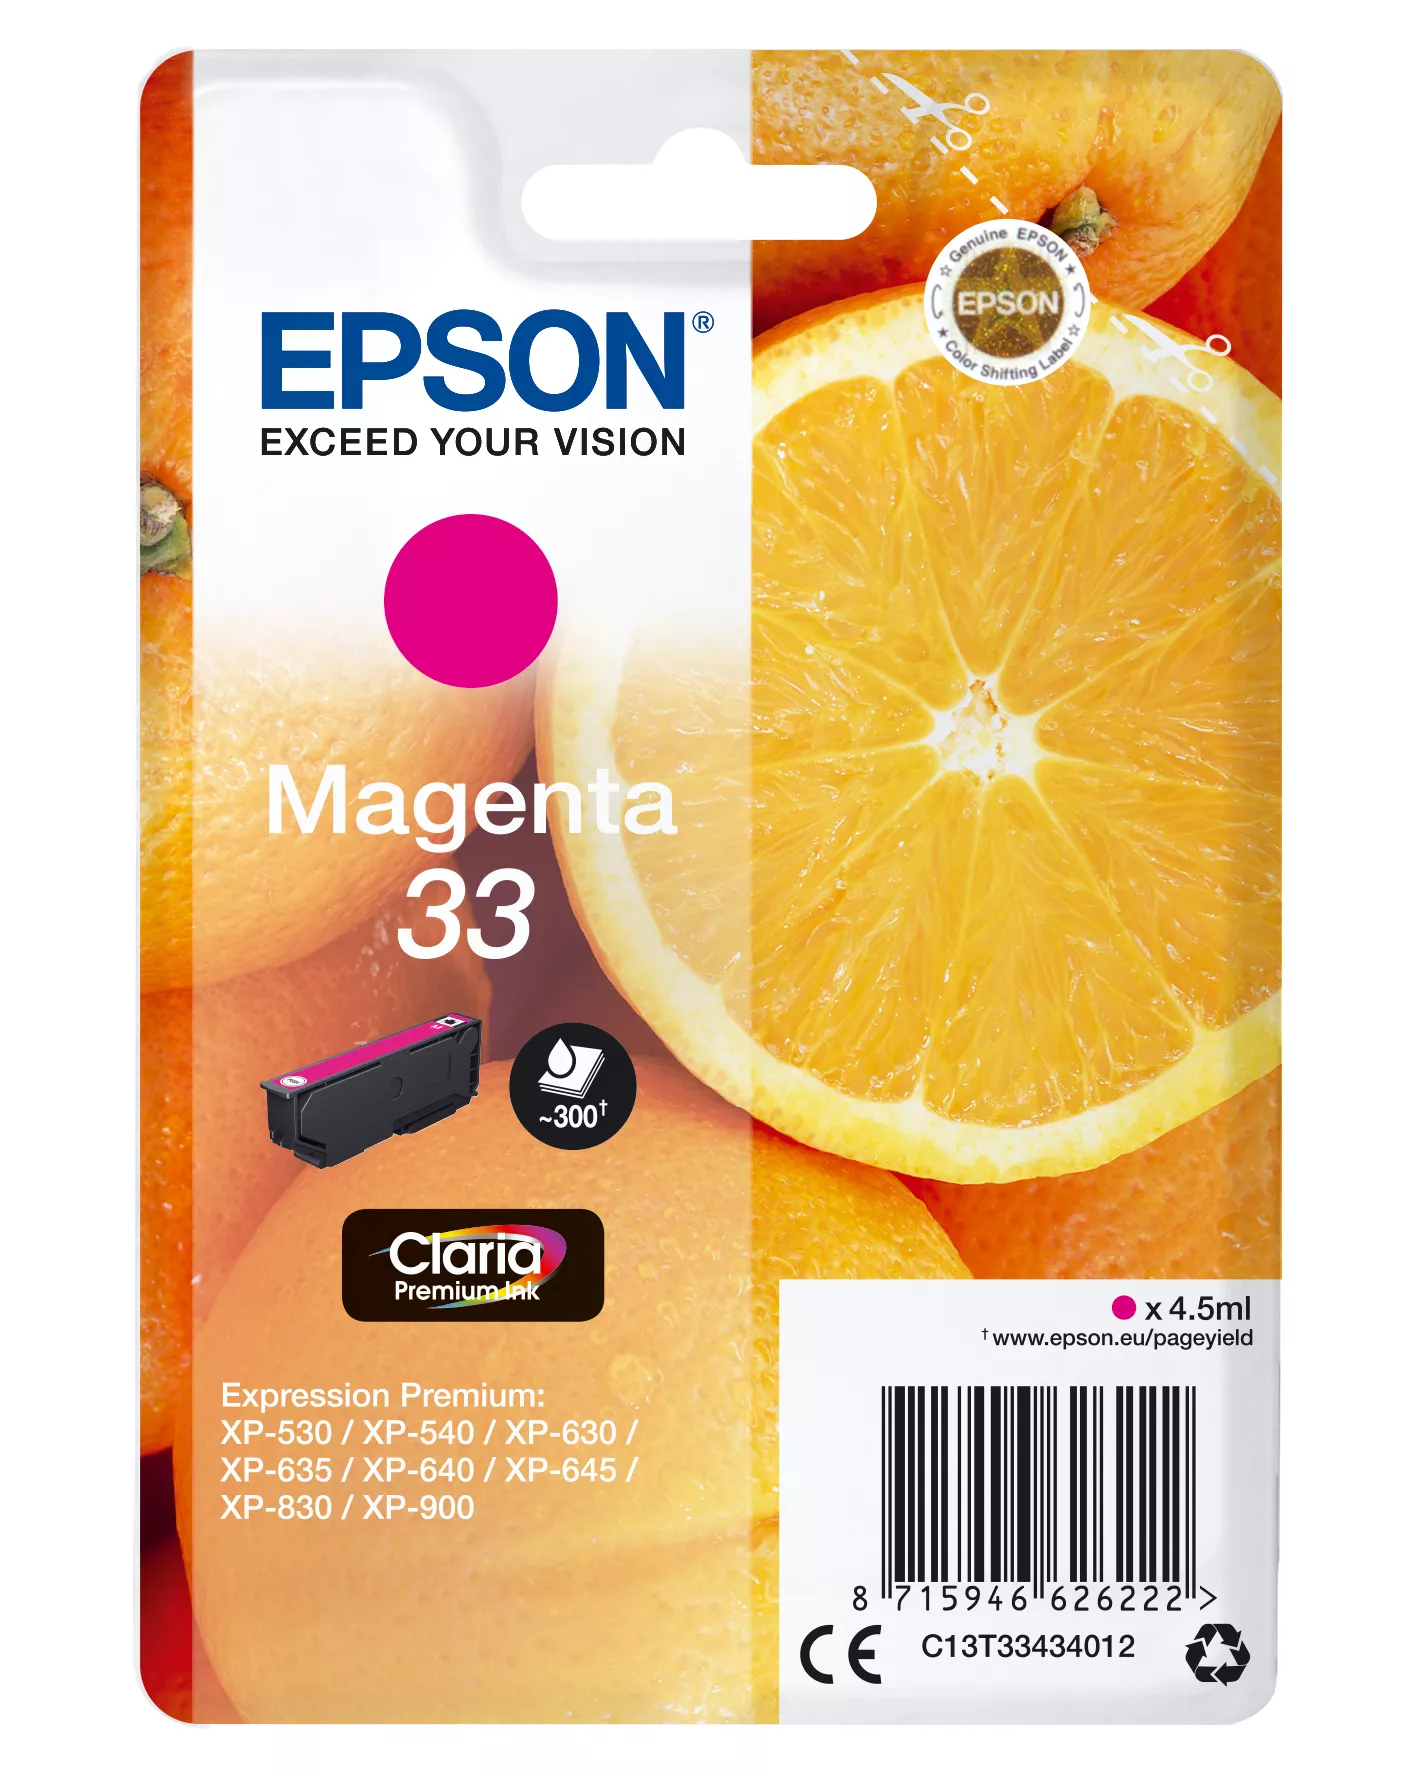 Achat EPSON Cartouche Oranges Encre Claria Premium Magenta et autres produits de la marque Epson